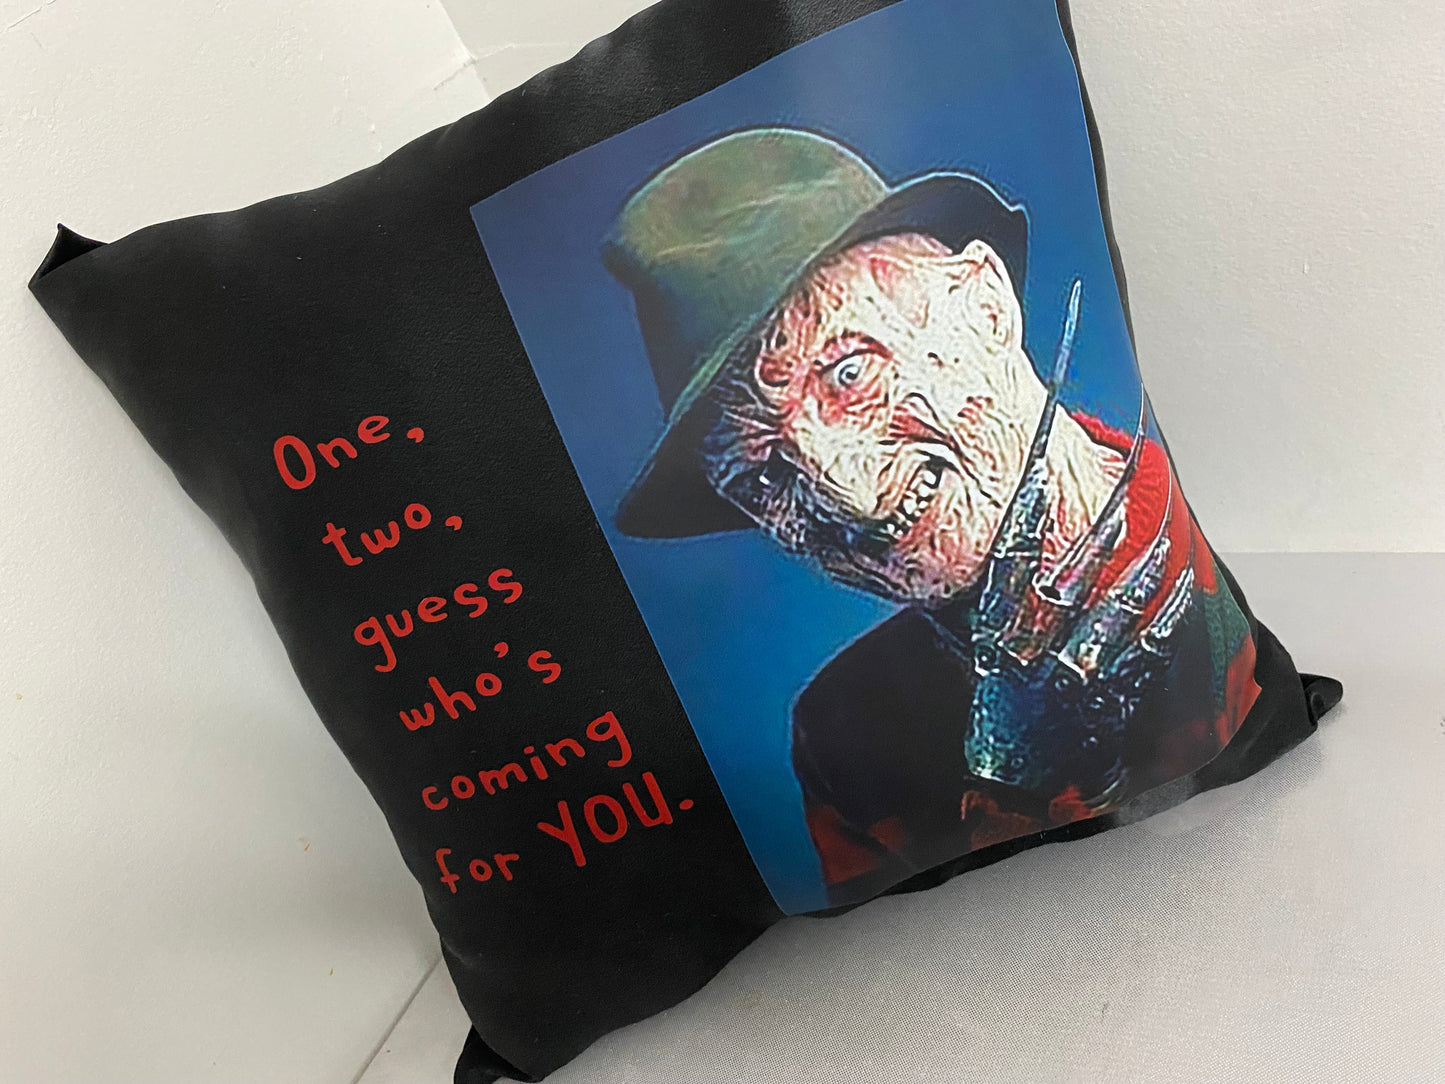 Boss Up Halloween Horror Pillows